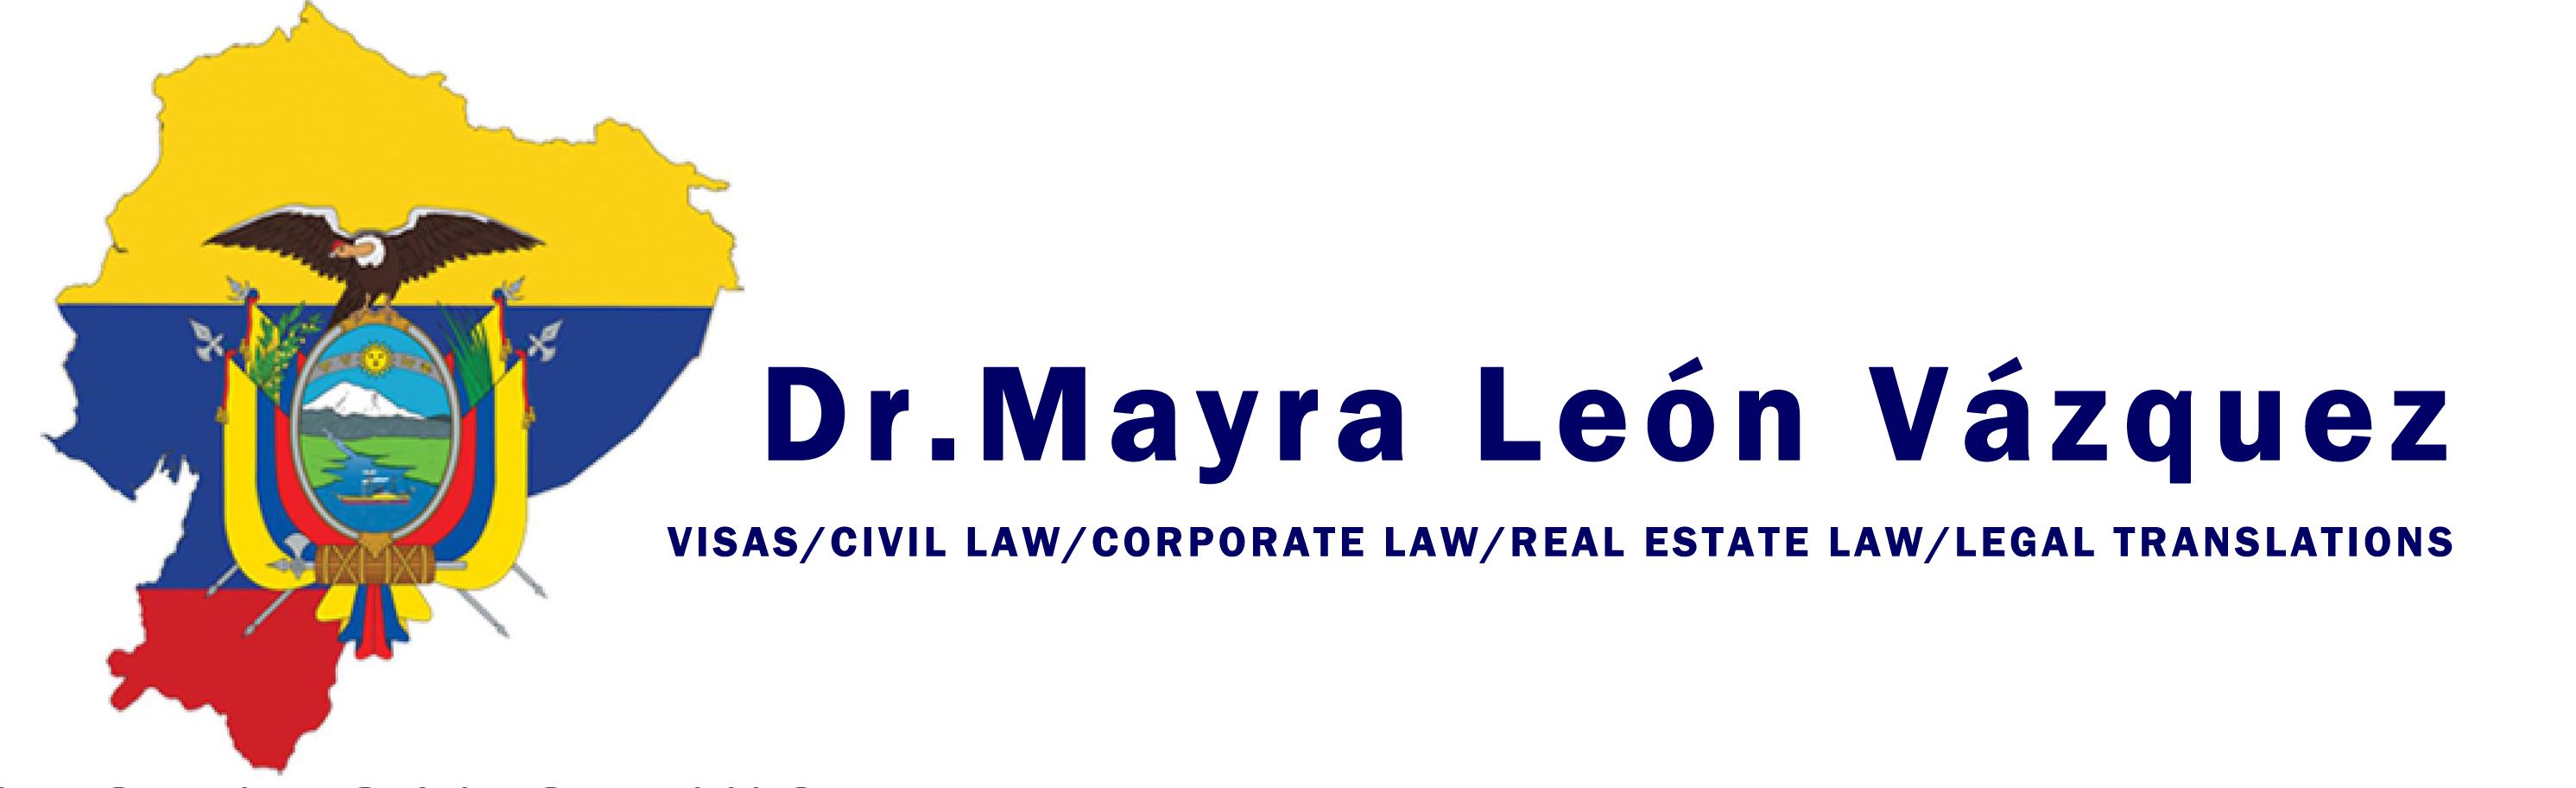 Ecuador Legal Services